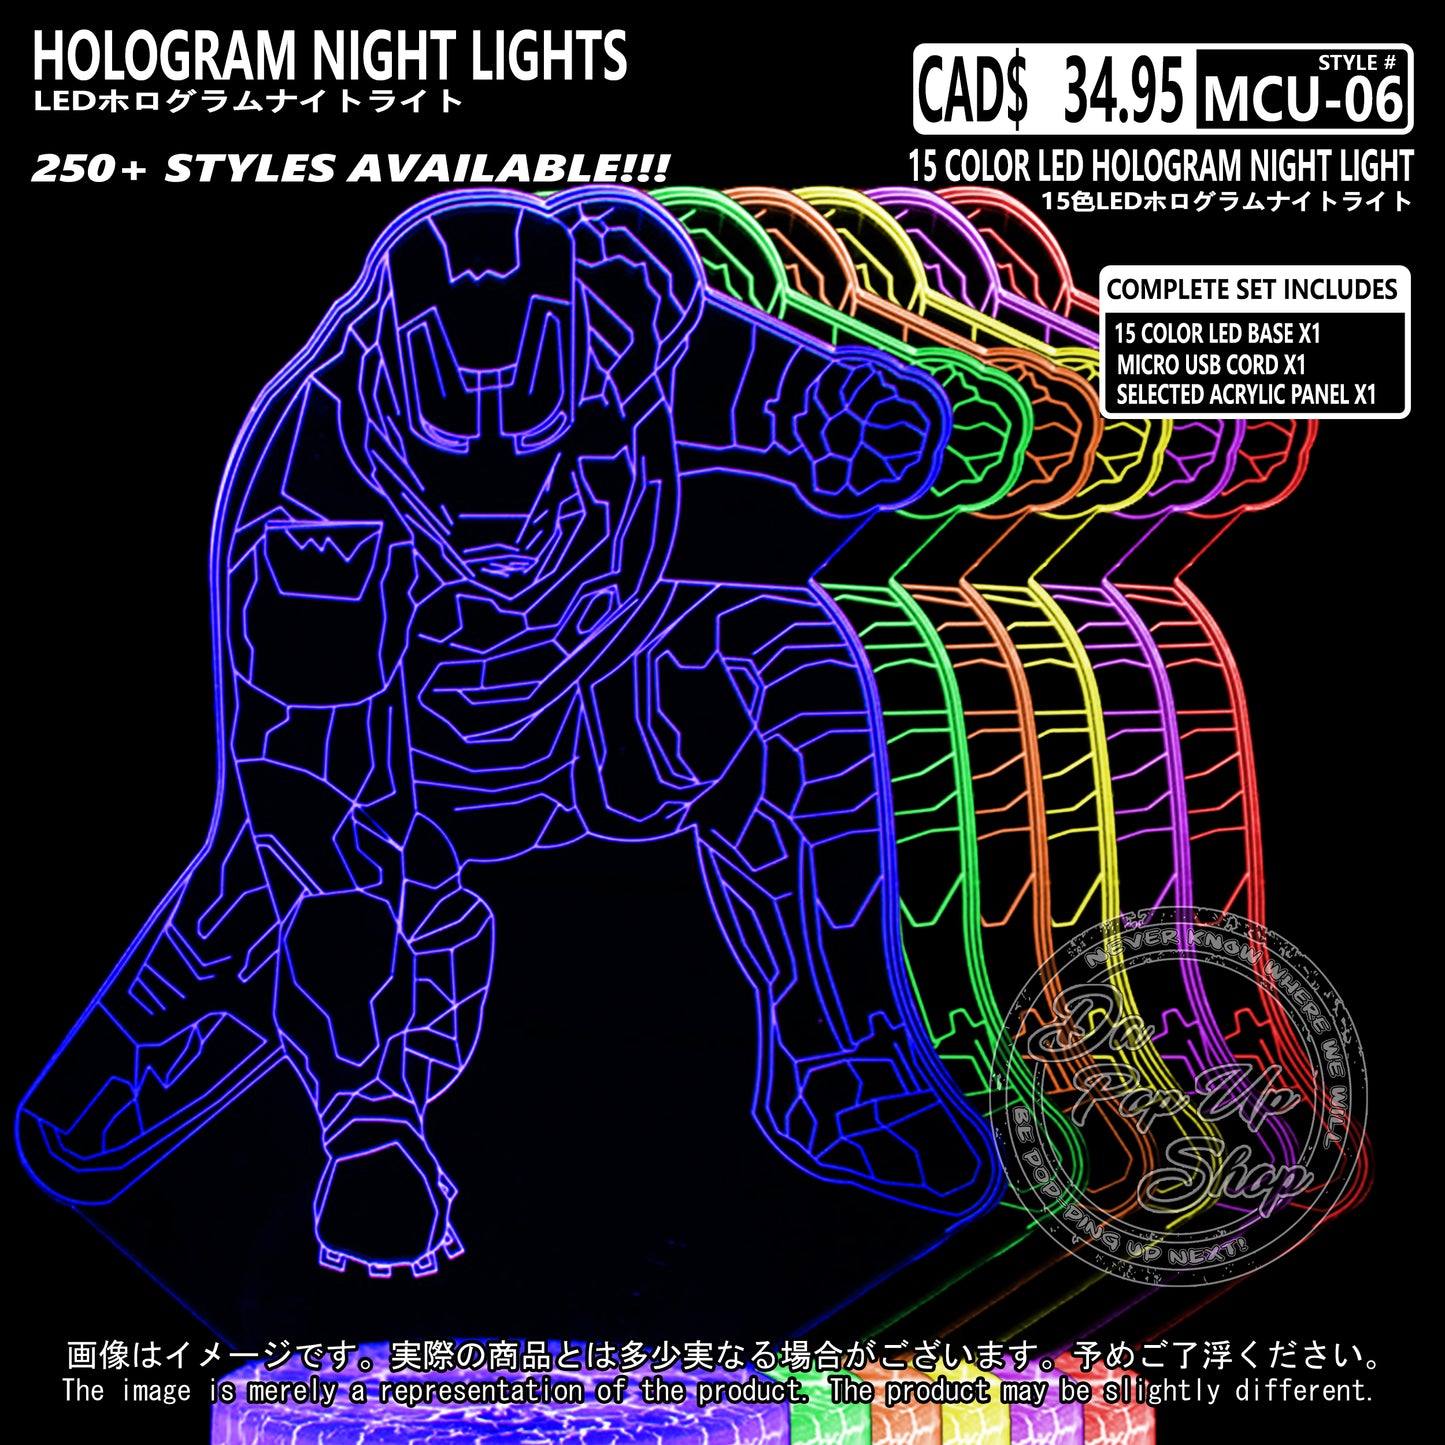 (MCU-06) MCU Marvel Cinematic Universal Hologram LED Night Light